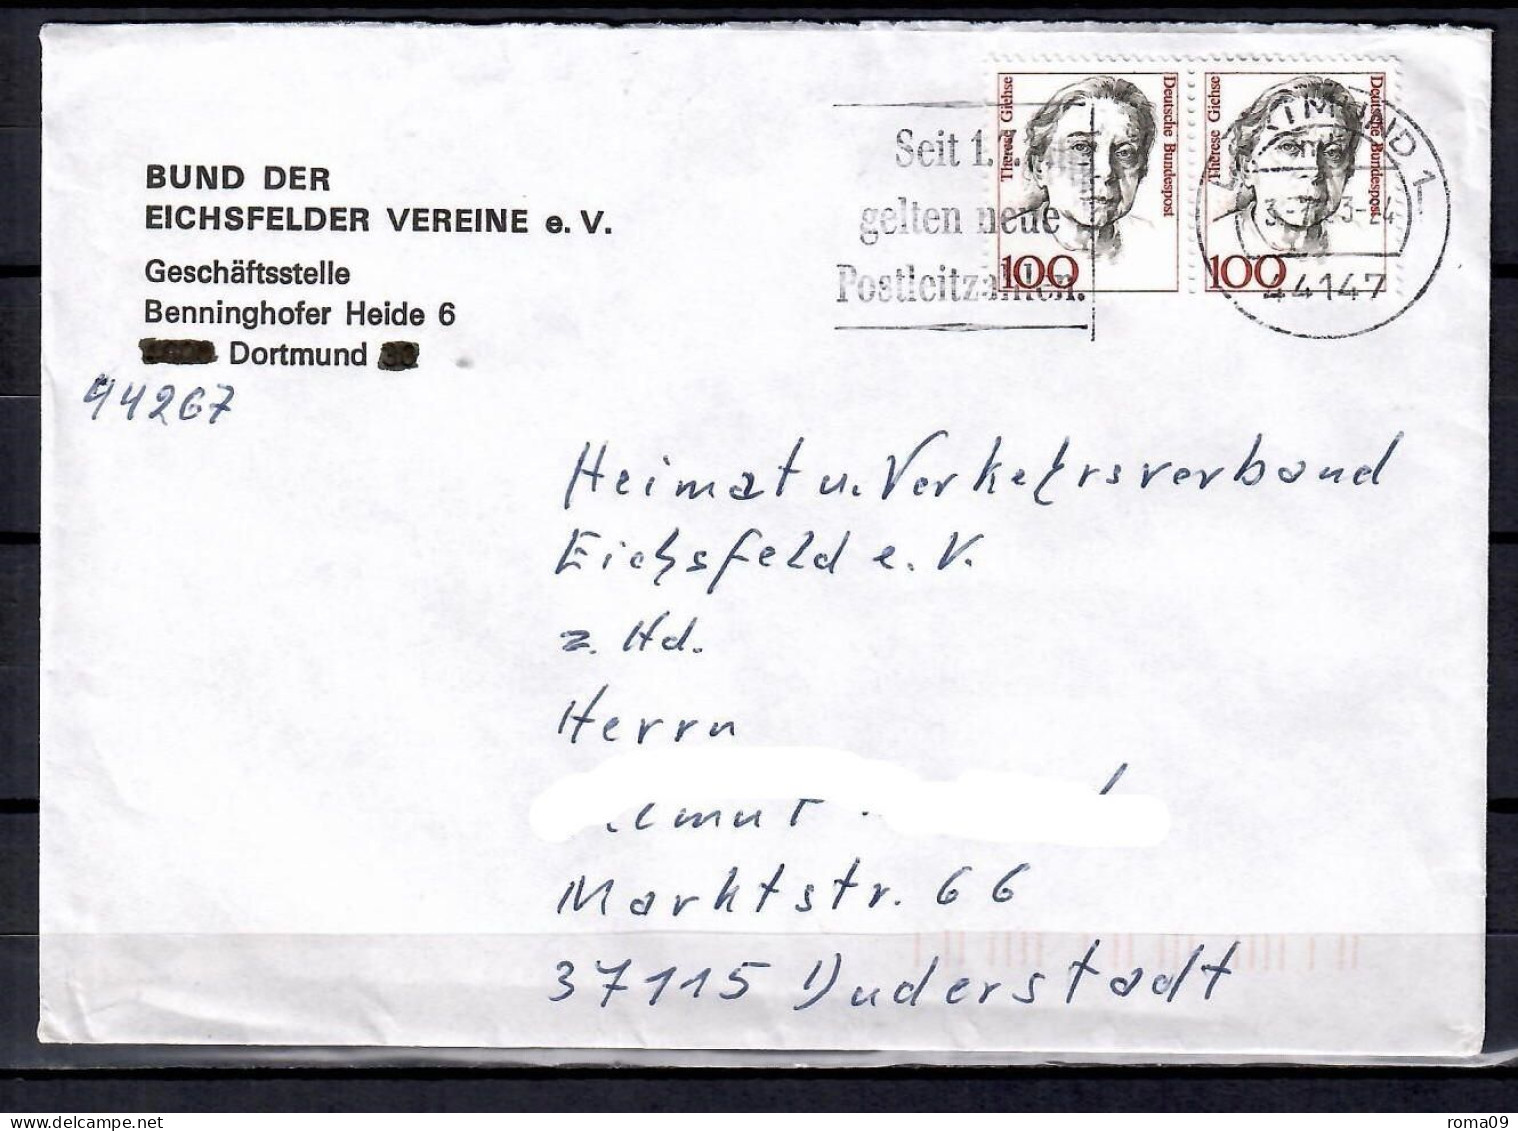 MiNr. 1390 (2x); Frauen: Therese Giehse, Auf Portoger. Brief Von Dortmund Nach Duderstadt; B-2095 - Covers & Documents